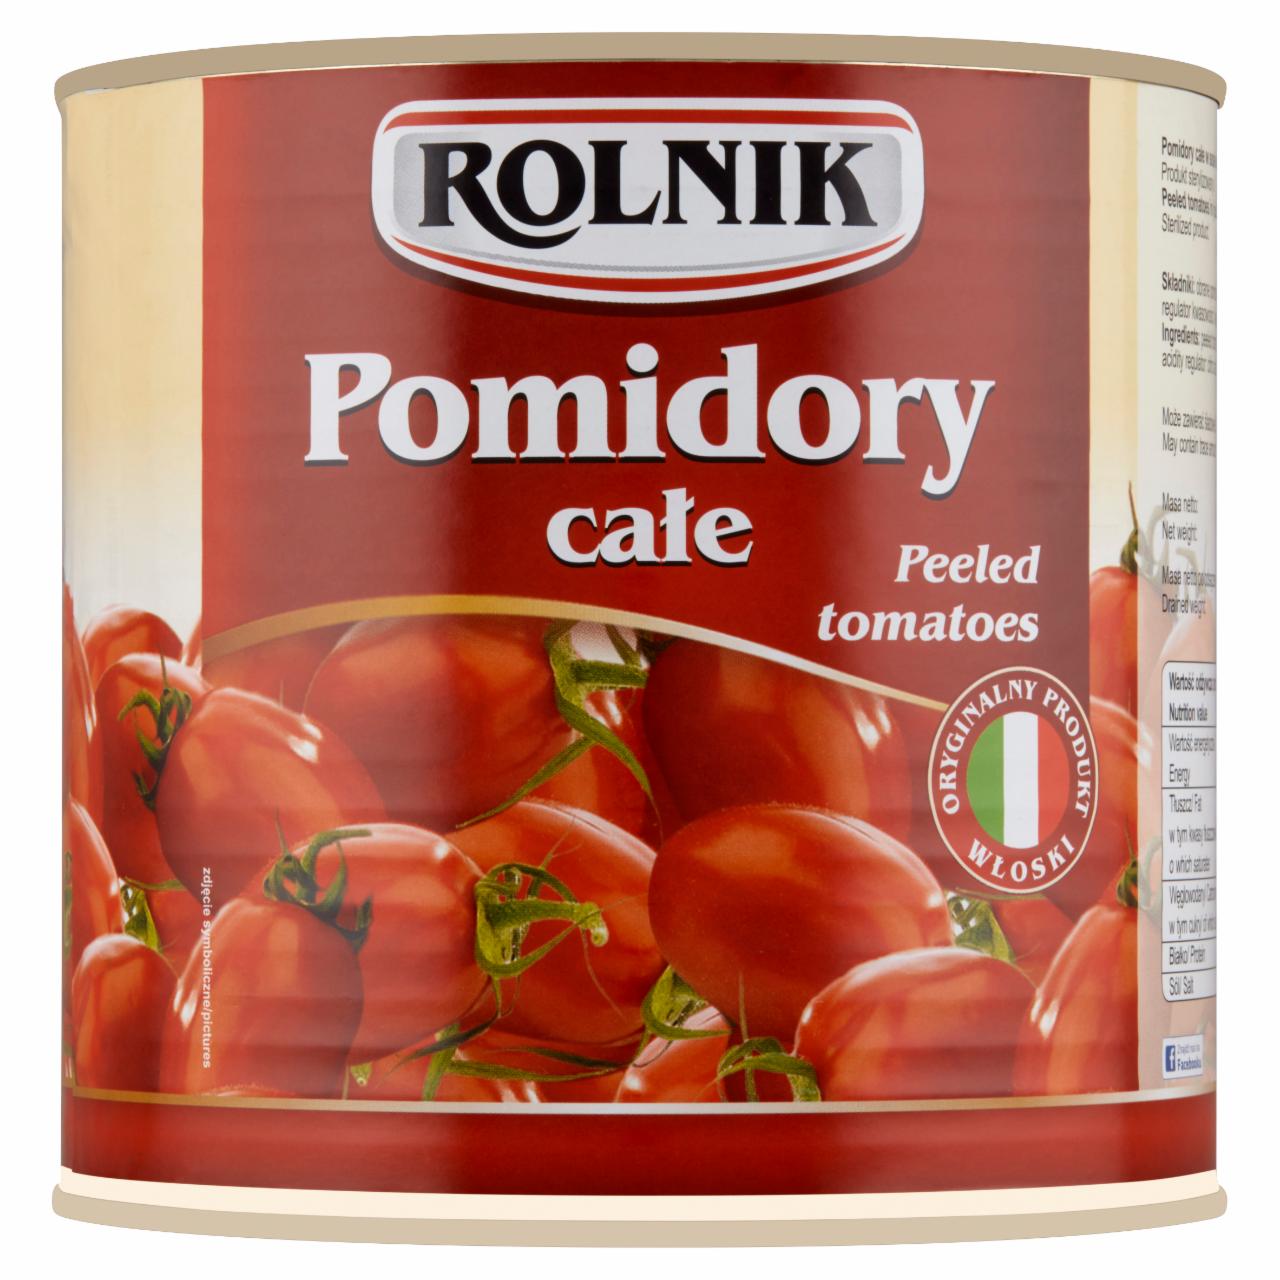 Zdjęcia - Rolnik Pomidory całe 2500 g